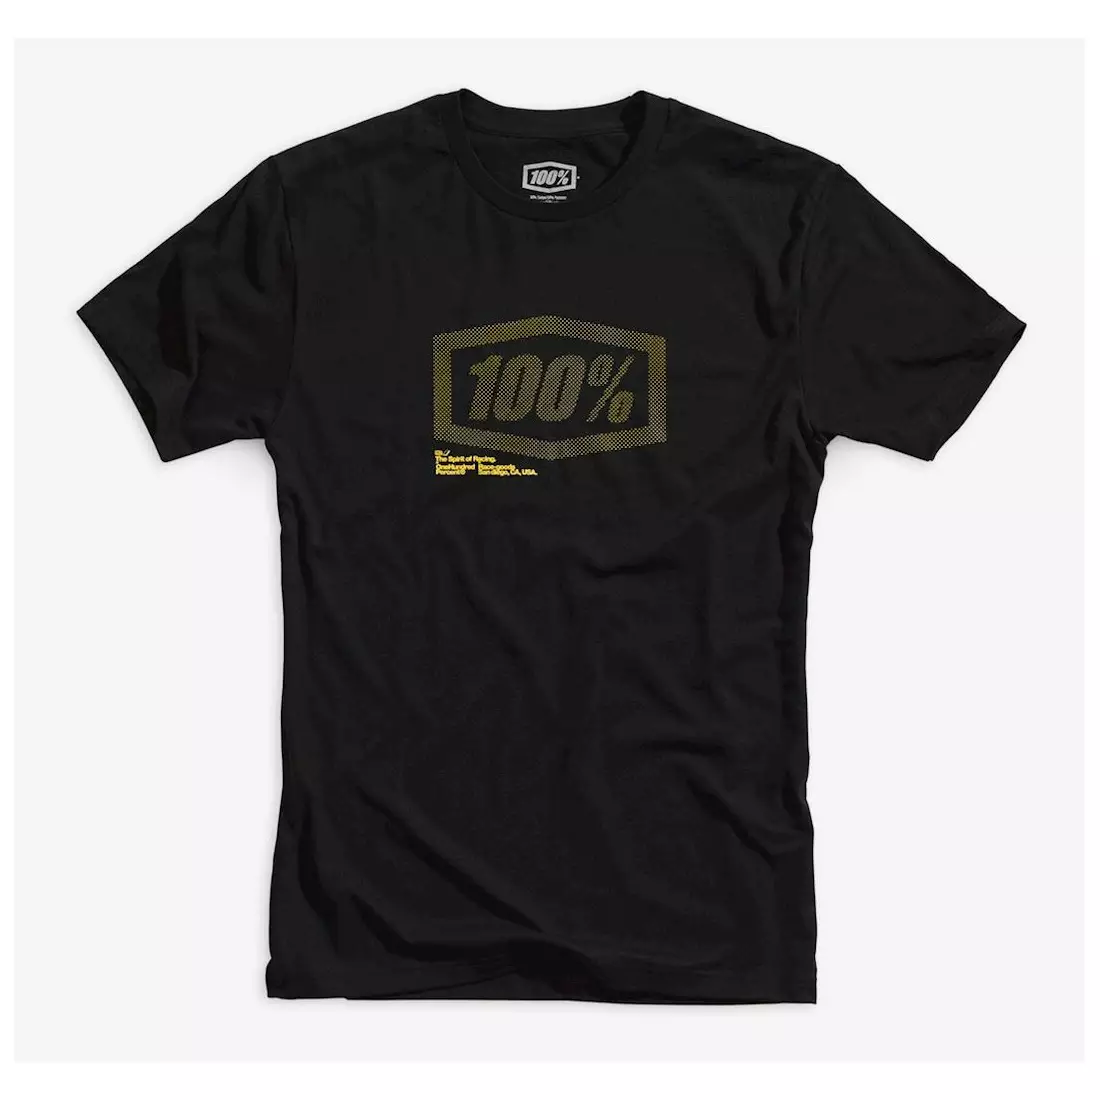 100% short sleeve men's shirt occult black STO-32096-001-11